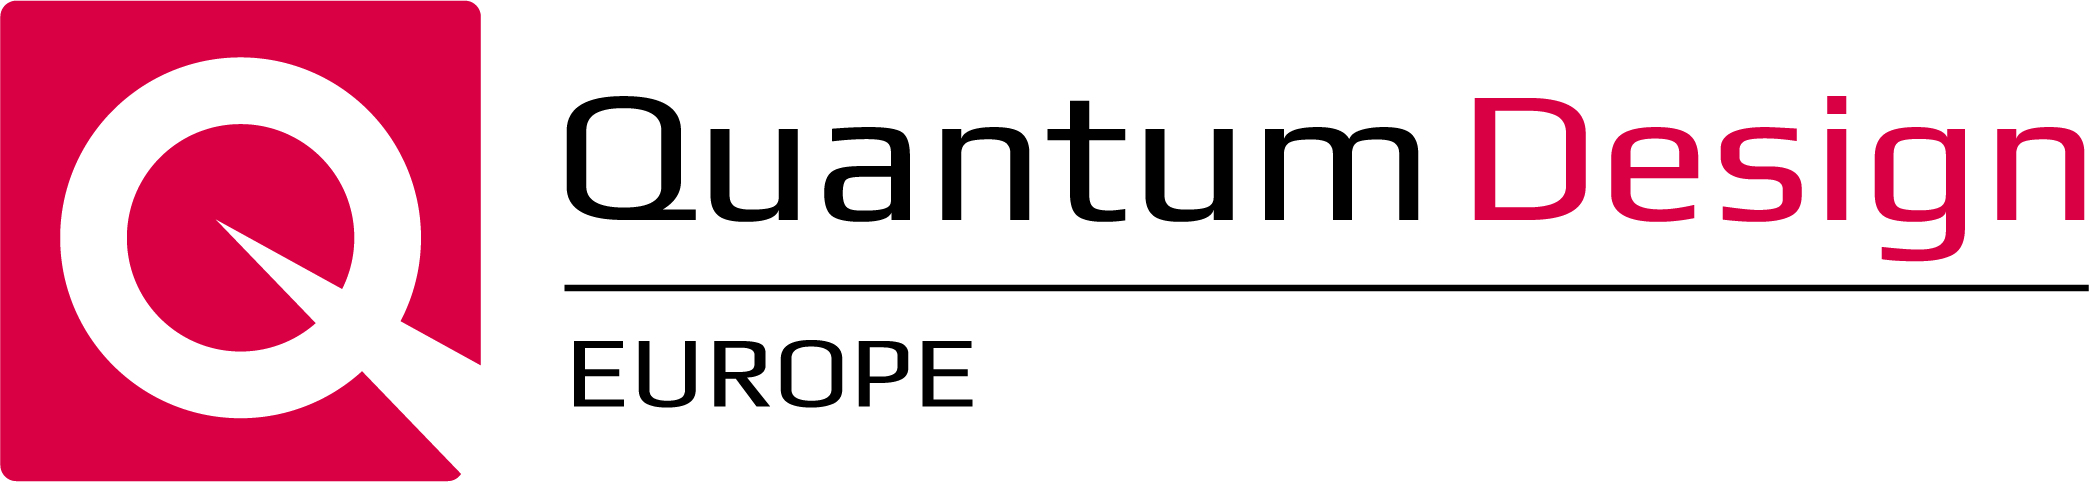 Quantum Design logo